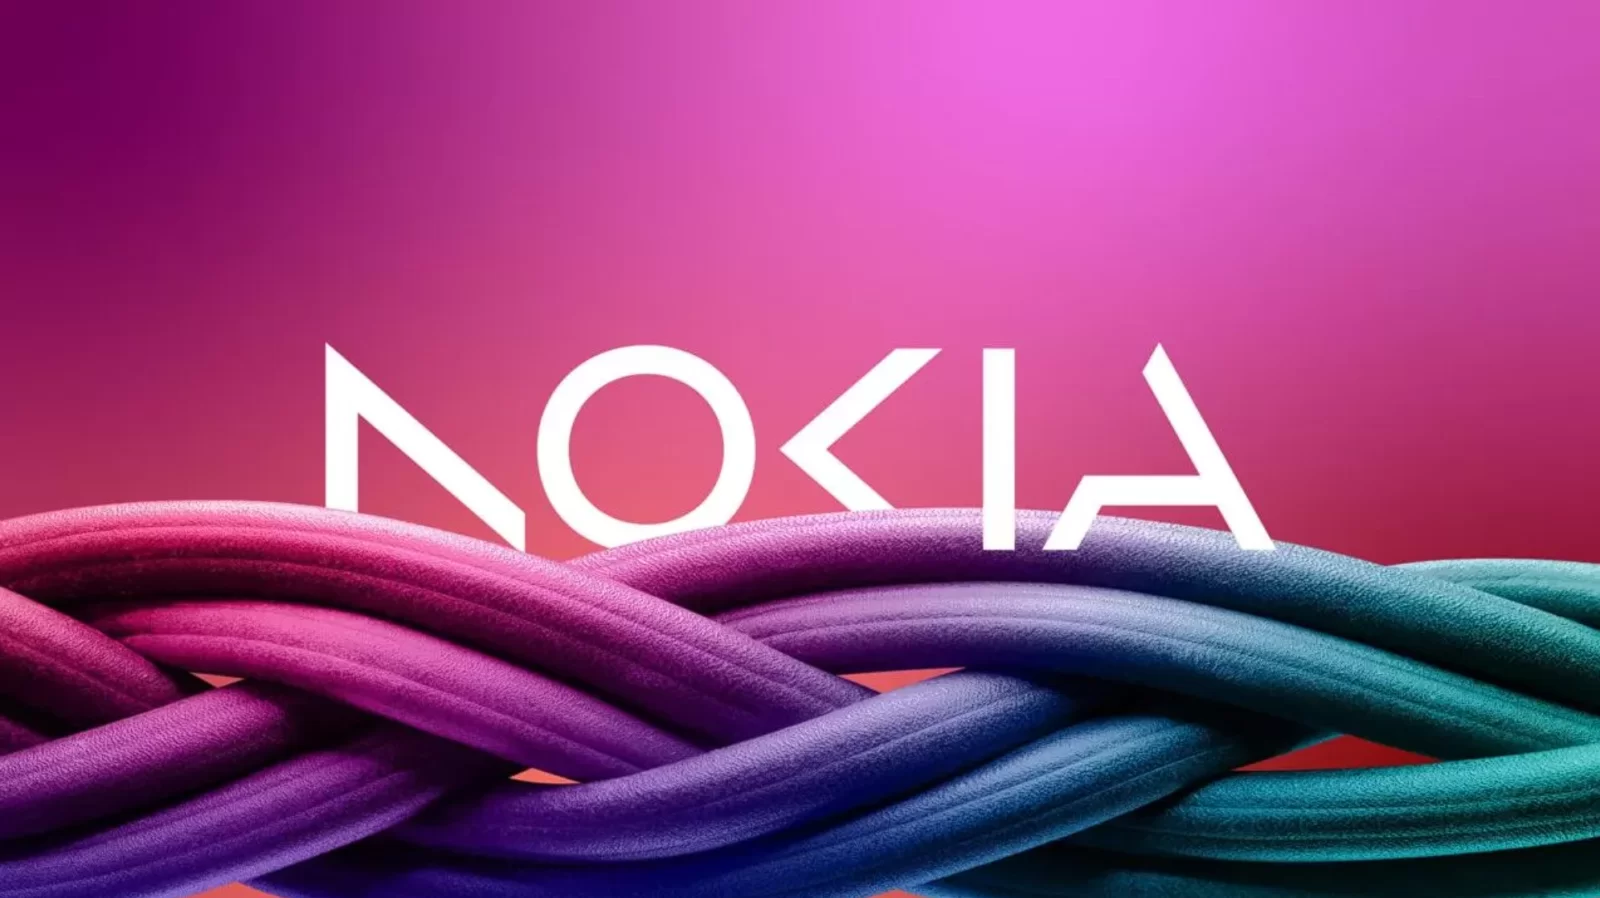 Nokia new logo | NOKIA | Nokia ประกาศเปลี่ยนโลโก้ใหม่ในรอบ 60 ปี คุณชอบมั้ย?